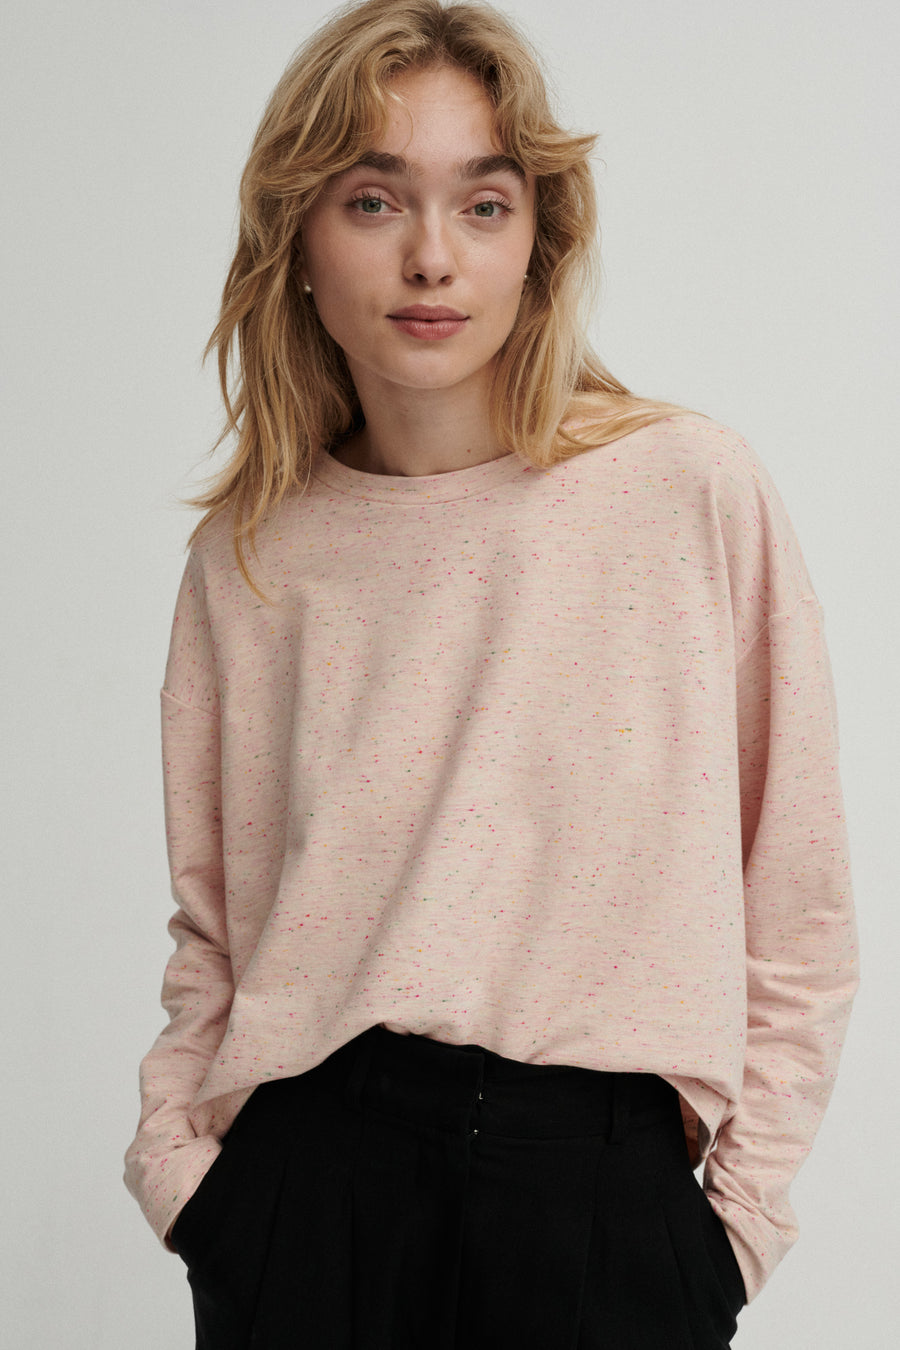 Bluza z bawełny organicznej / 14 / 04 / pink sprinkles